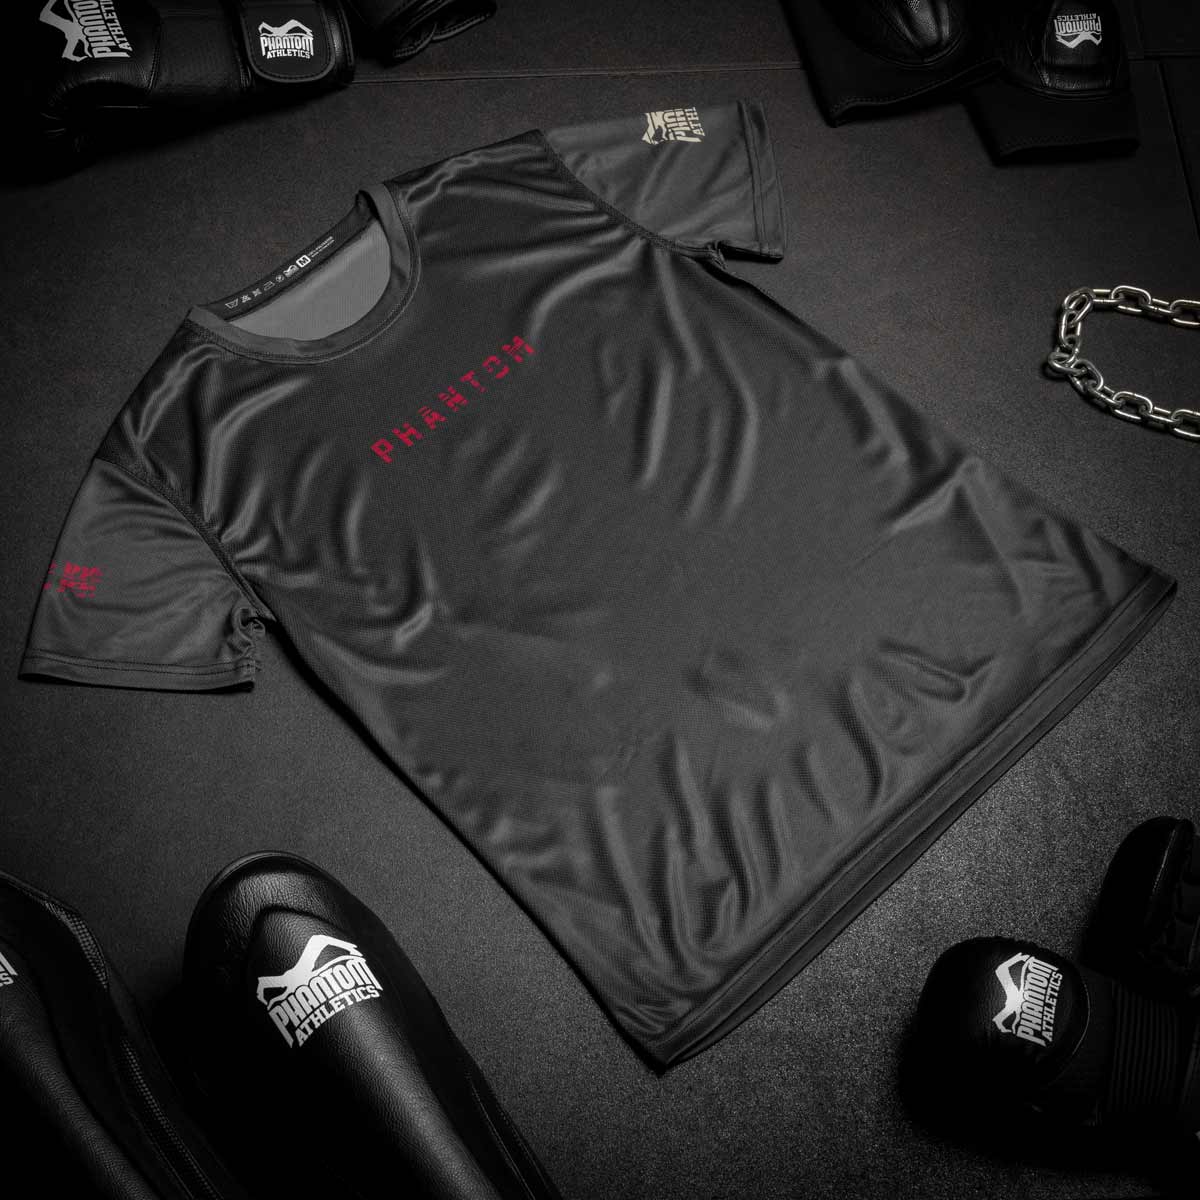 Das Phantom EVO Trainingsshirt für deinen Kampfsport. Atmungsaktiv und funktional. Ideal für MMA, BJJ oder Muay Thai. Im limitierten Tiger Unit Design.